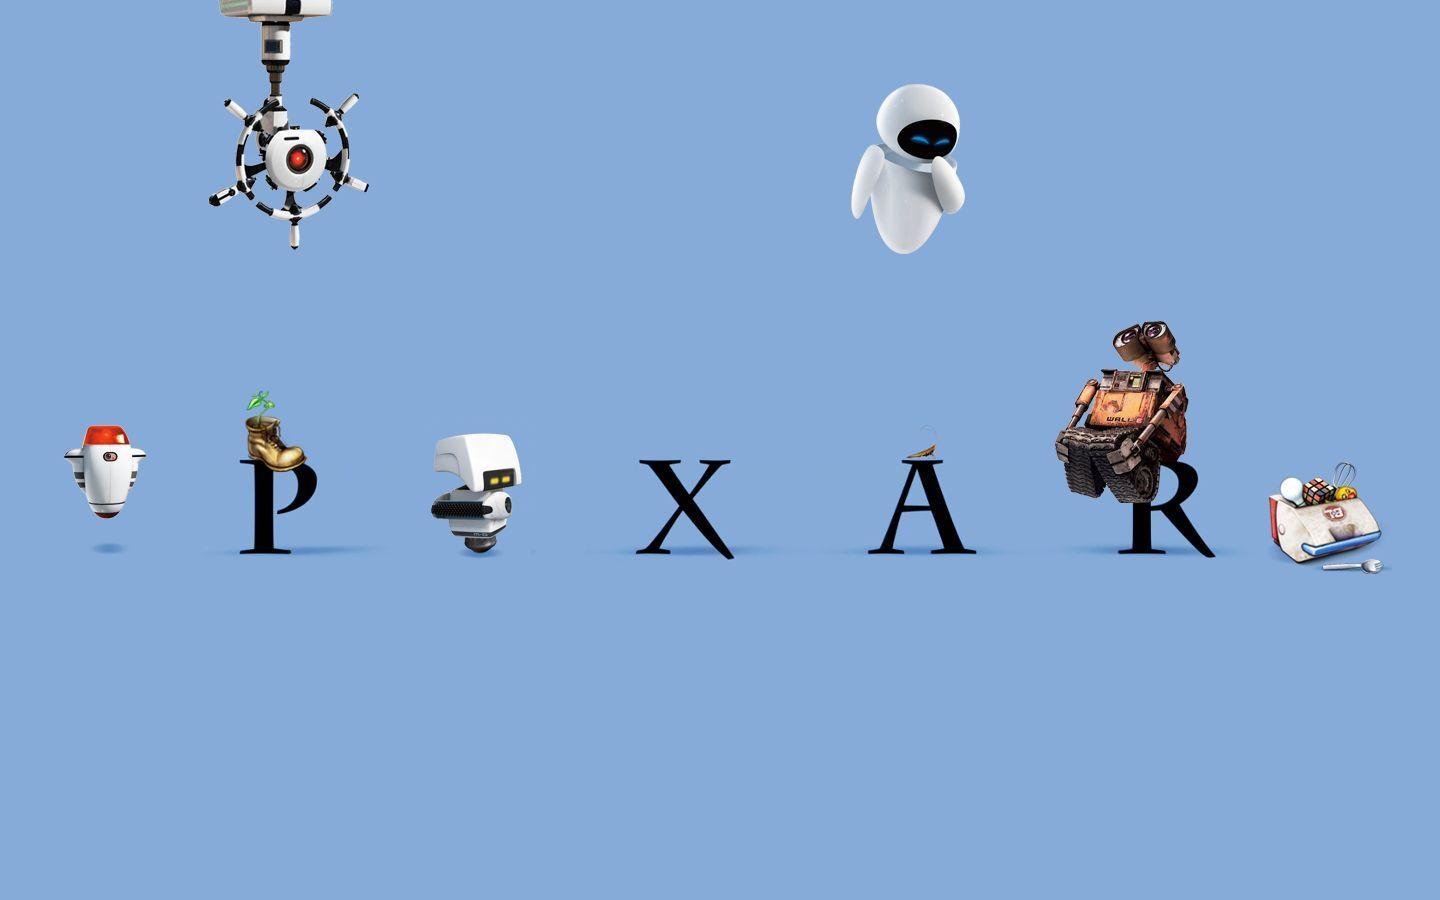 Wall-E Pixar Logo - Pixar's Wall E. Pixar, Pixar Movies, Disney